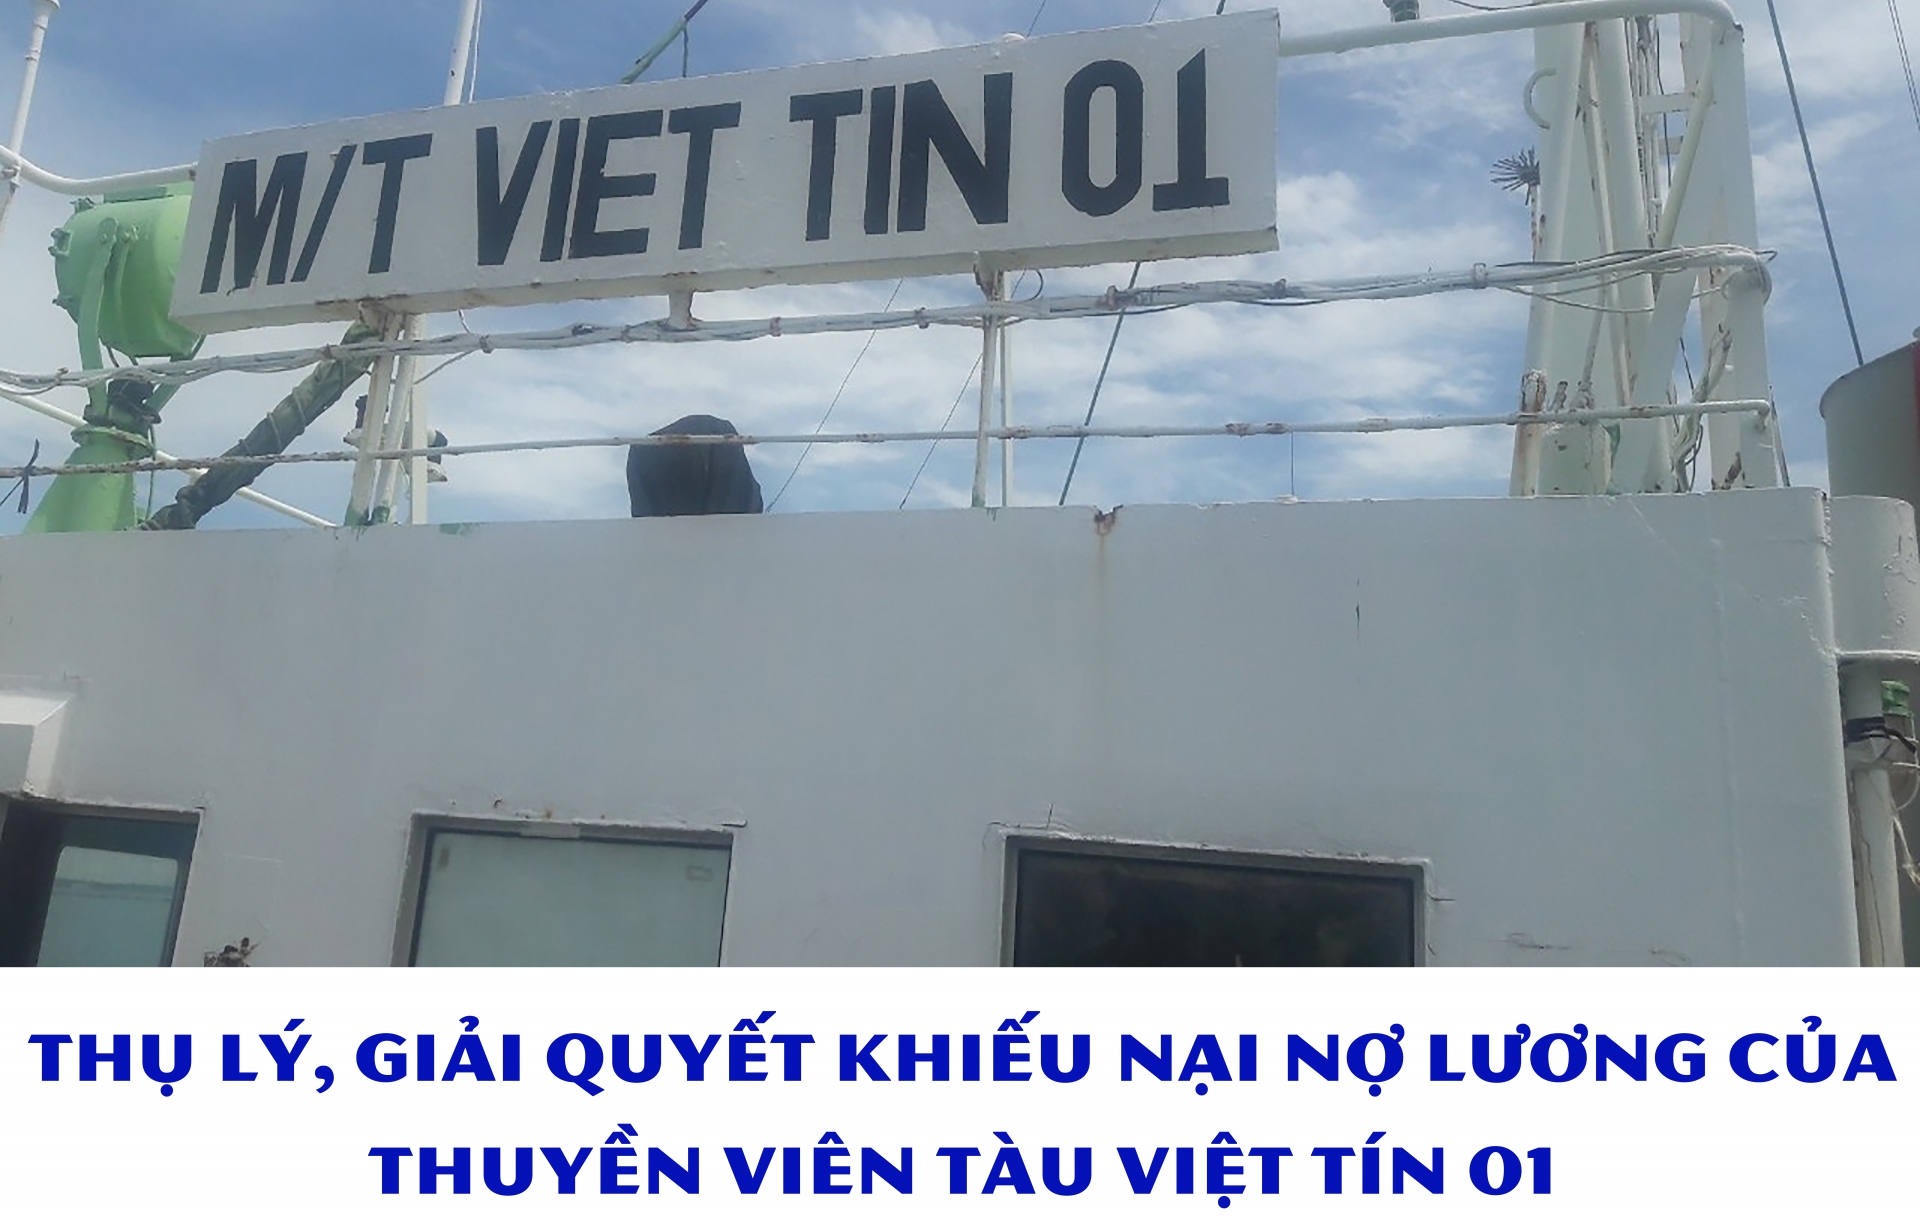 Thụ lý, giải quyết khiếu nại nợ lương của thuyền viên tàu Việt Tín 01